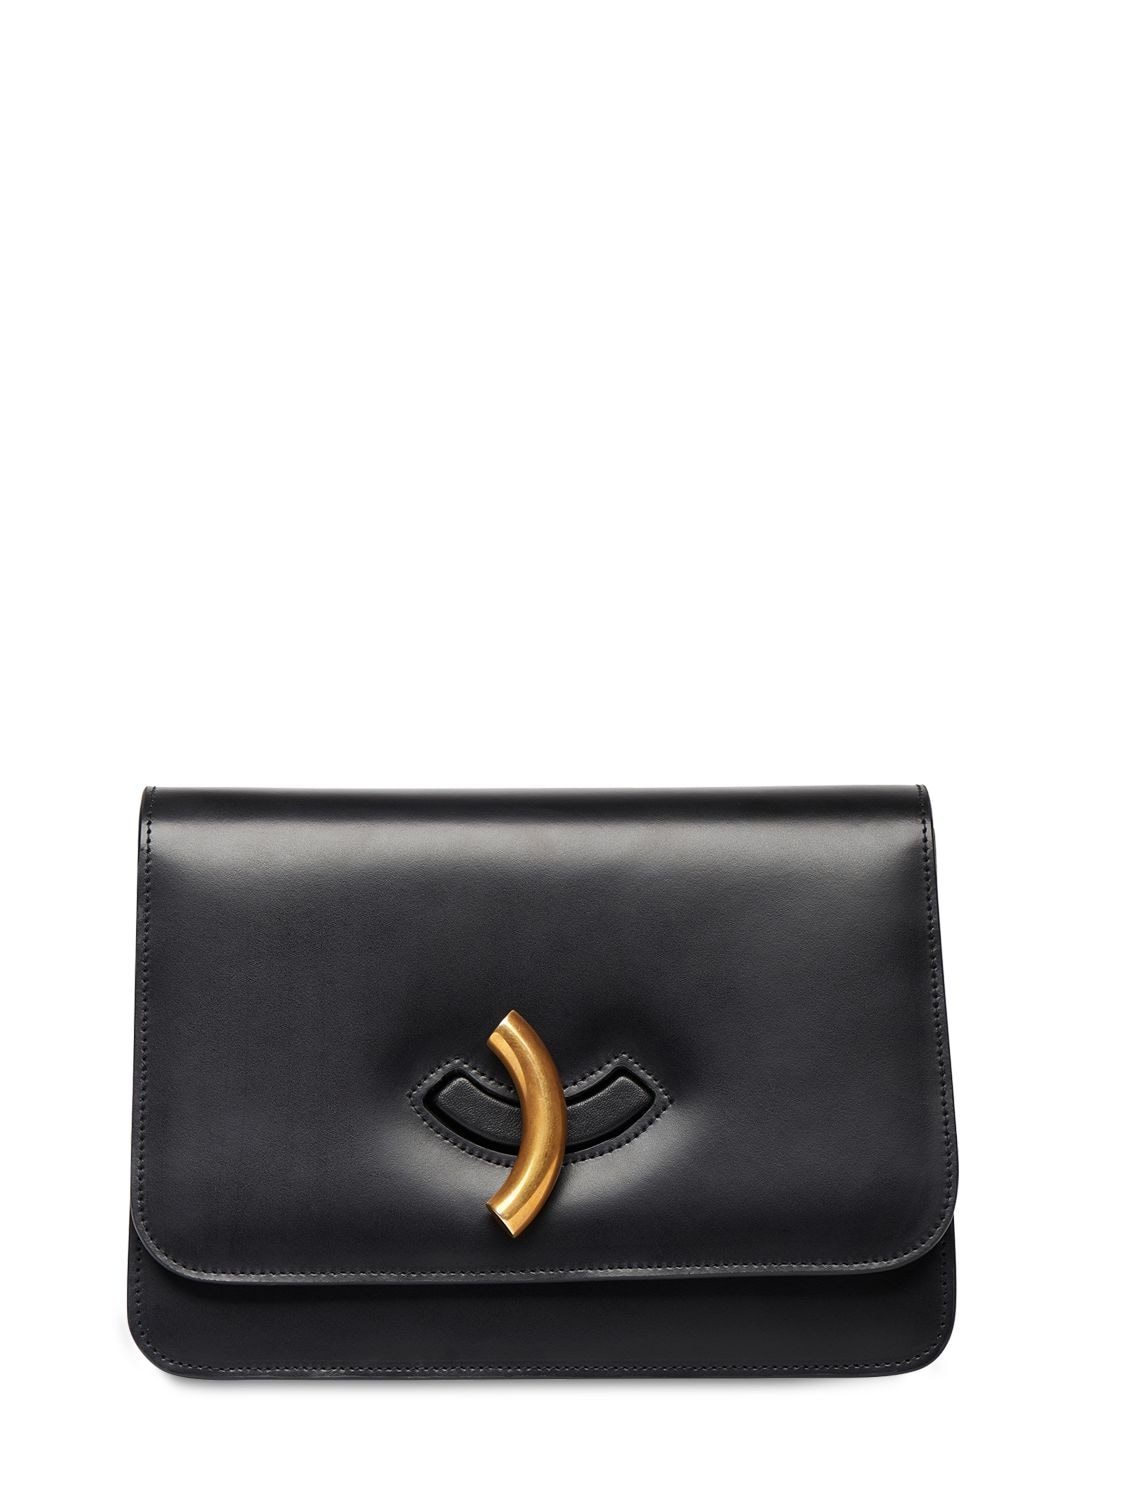 Image of Macheroni Leather Shoulder Bag